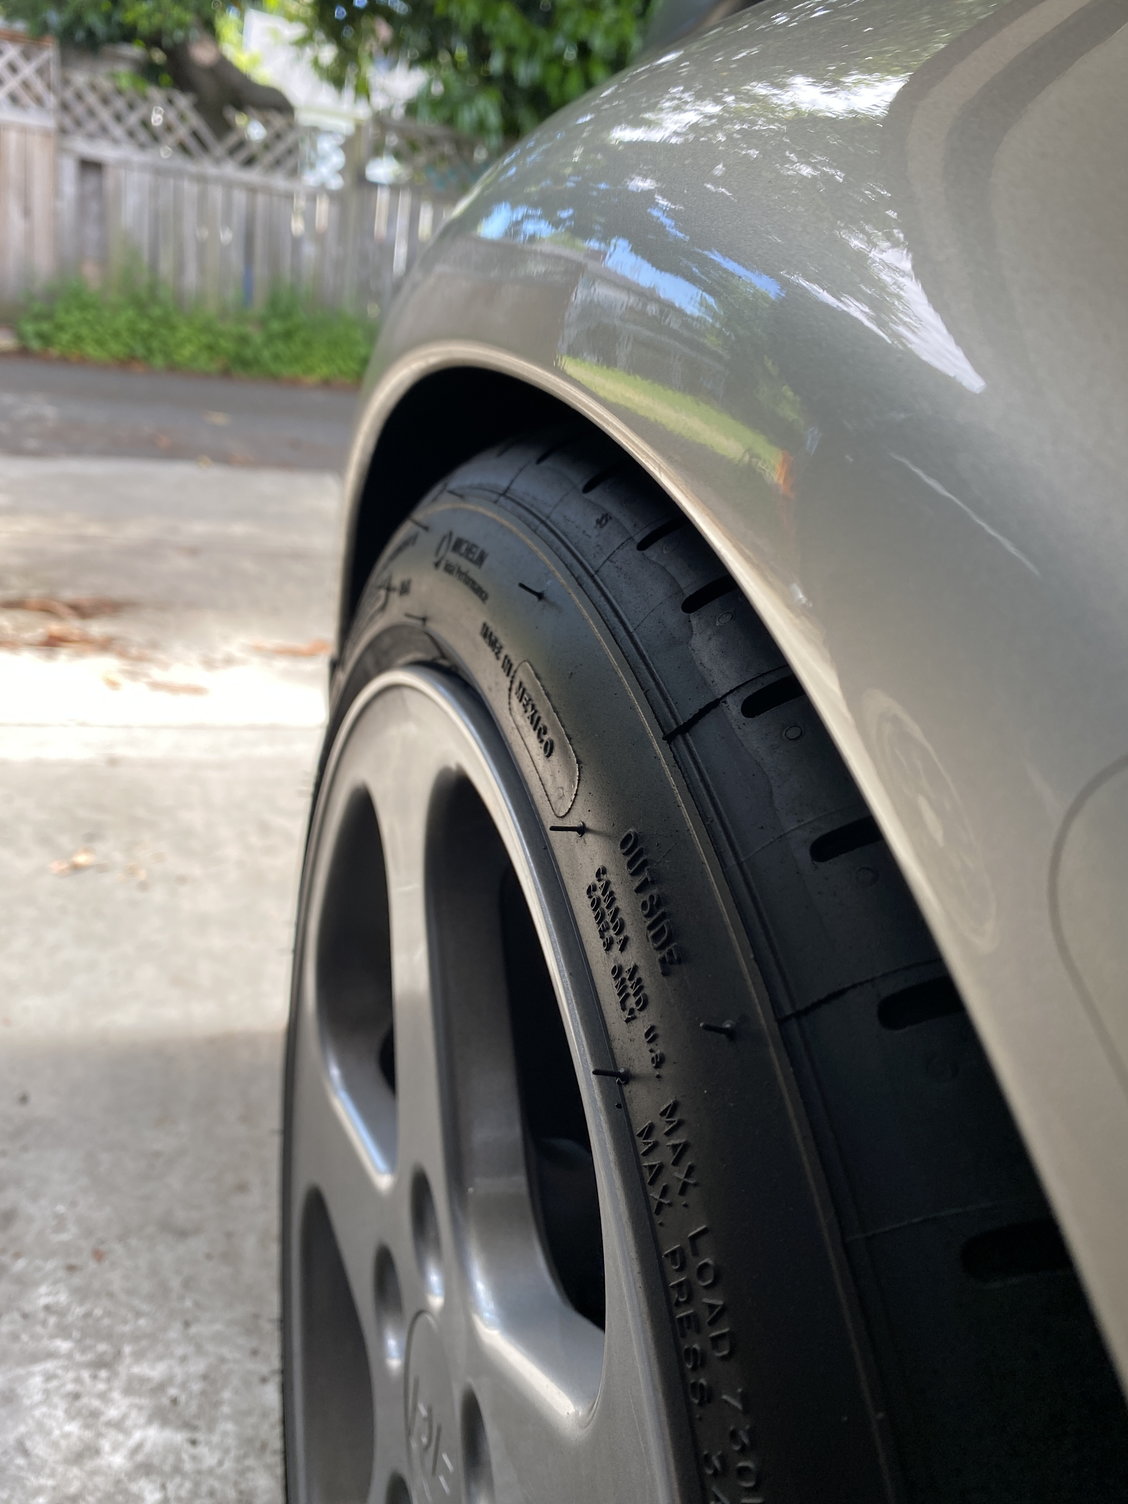 225/40R18 front tire stretch - Rennlist - Porsche Discussion Forums